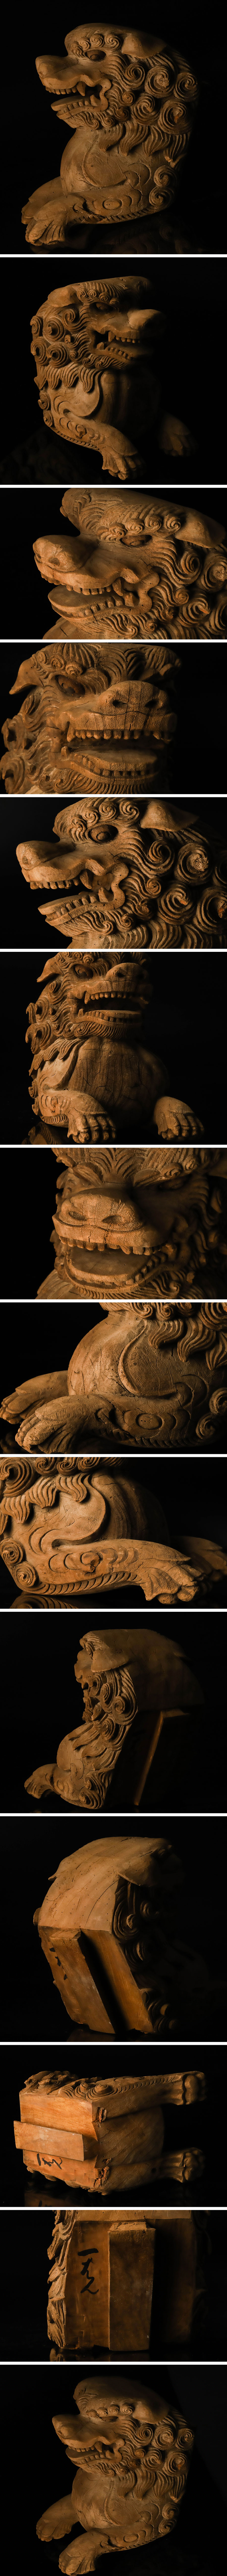 国産在庫あ【琴》送料無料 仏教美術 寺院仏具 時代 獅子彫刻木鼻 TD302 仏像